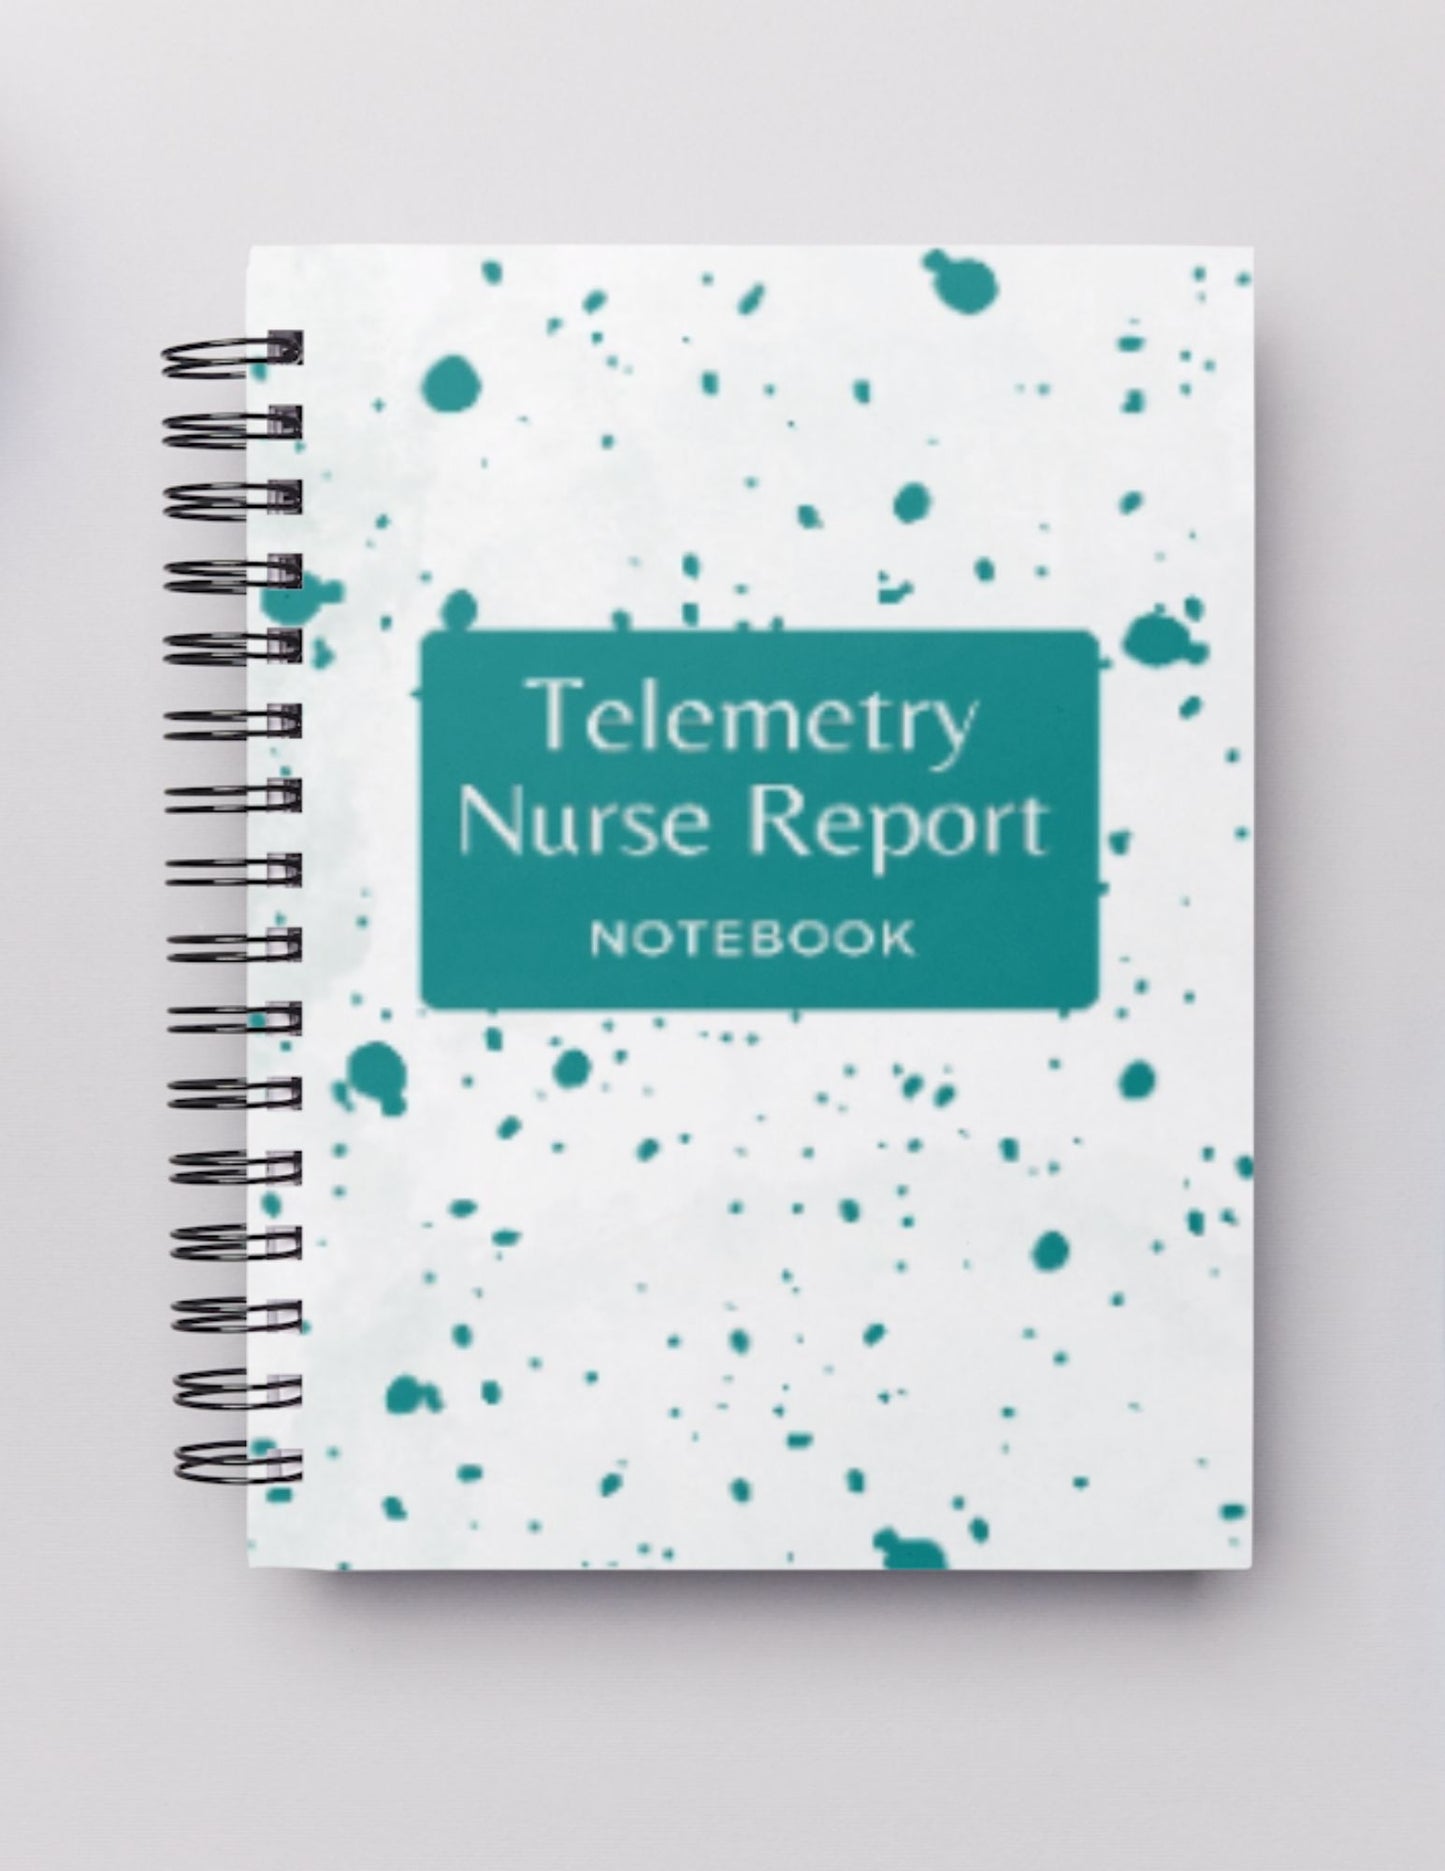 Telemetry (1 patient) Nurse Report Notebook